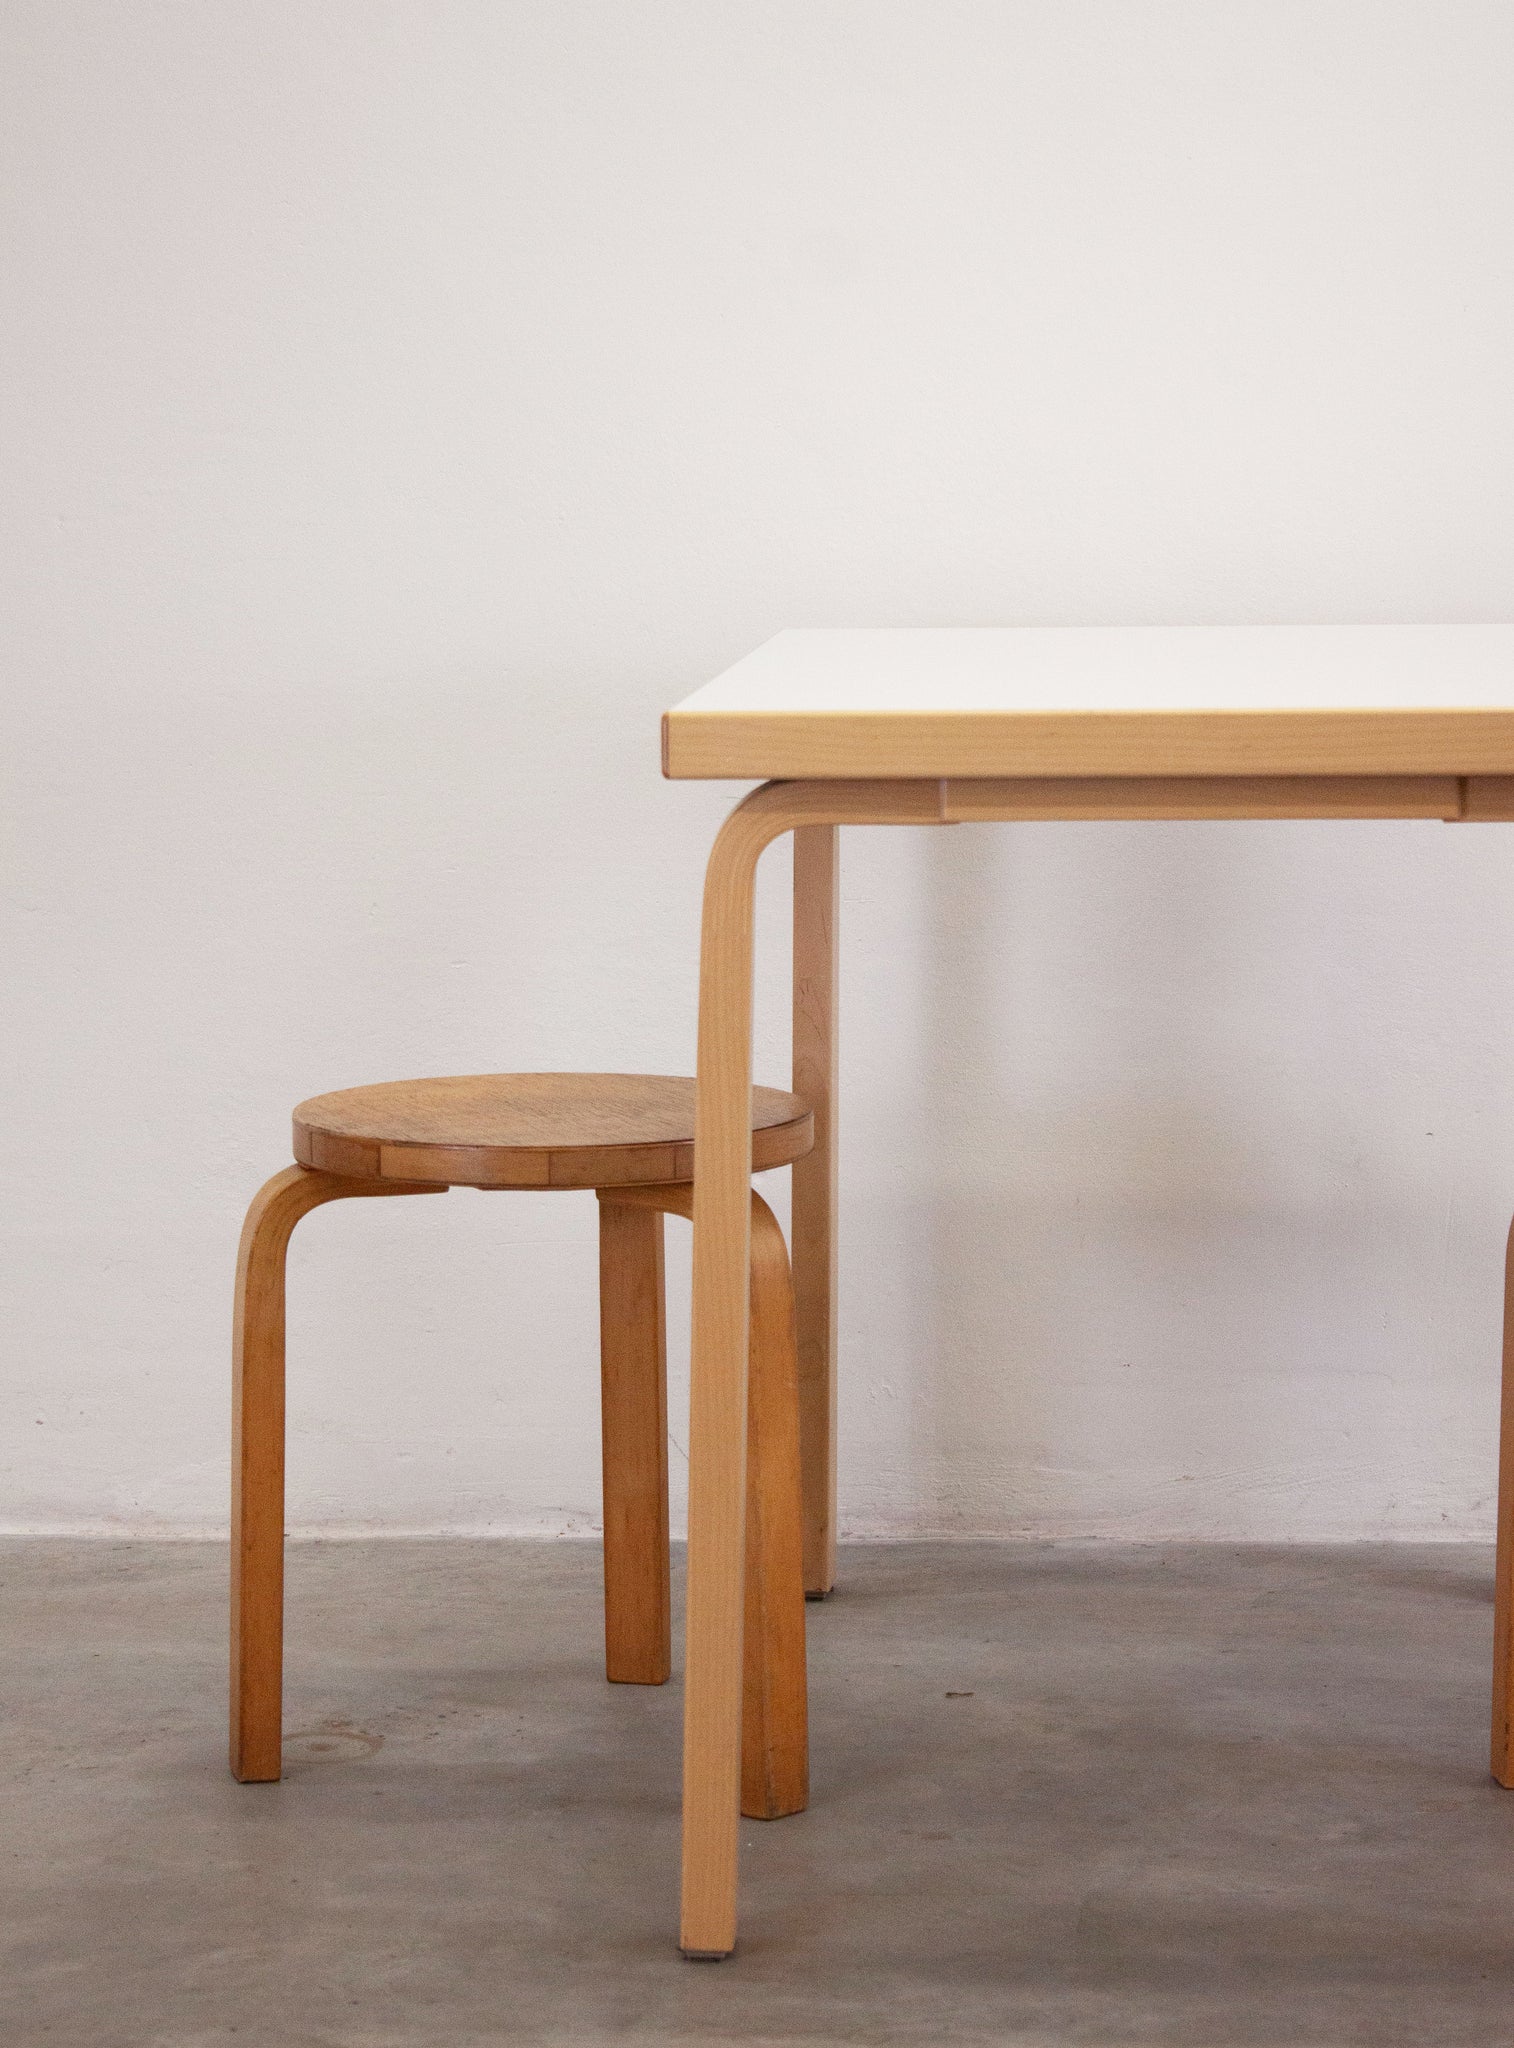 Artek Dining Table or Desk by Alvar Aalto (White)